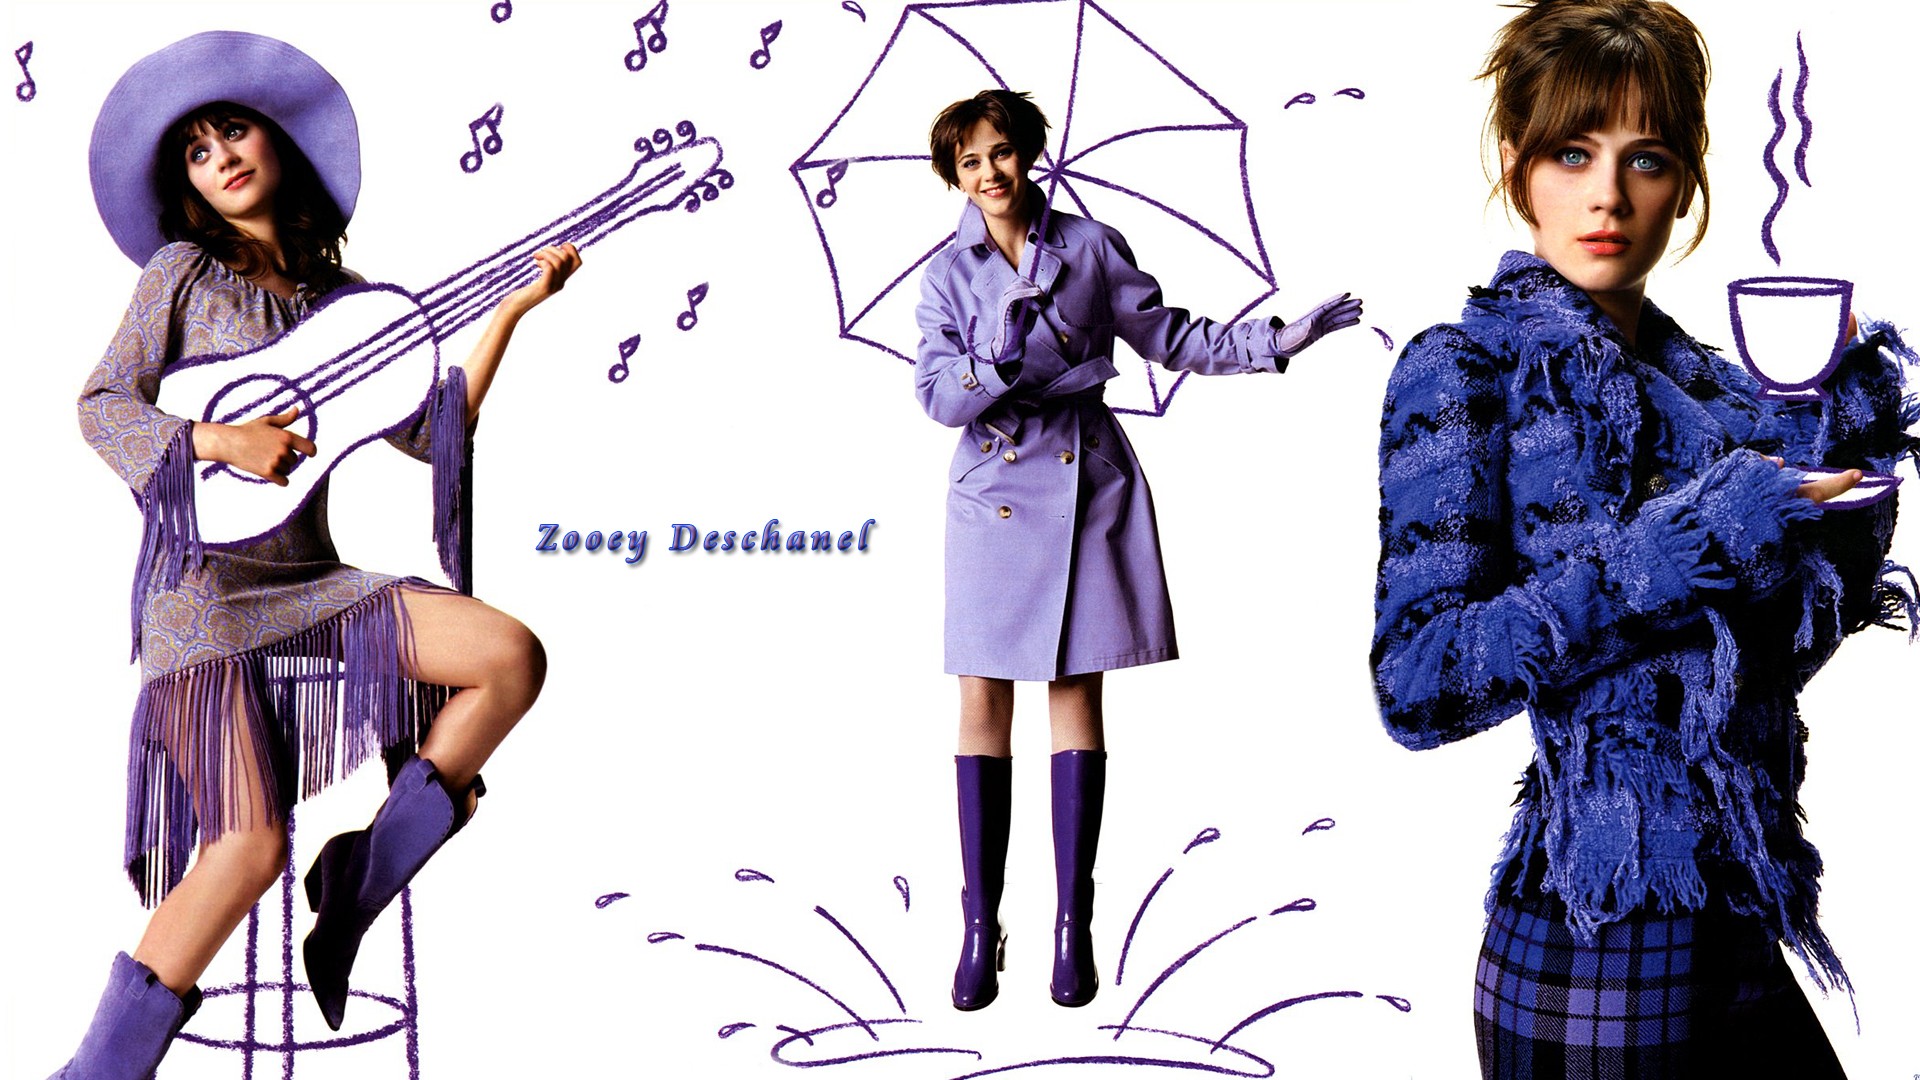 People 1920x1080 Zooey Deschanel celebrity collage hat actress women violet coat